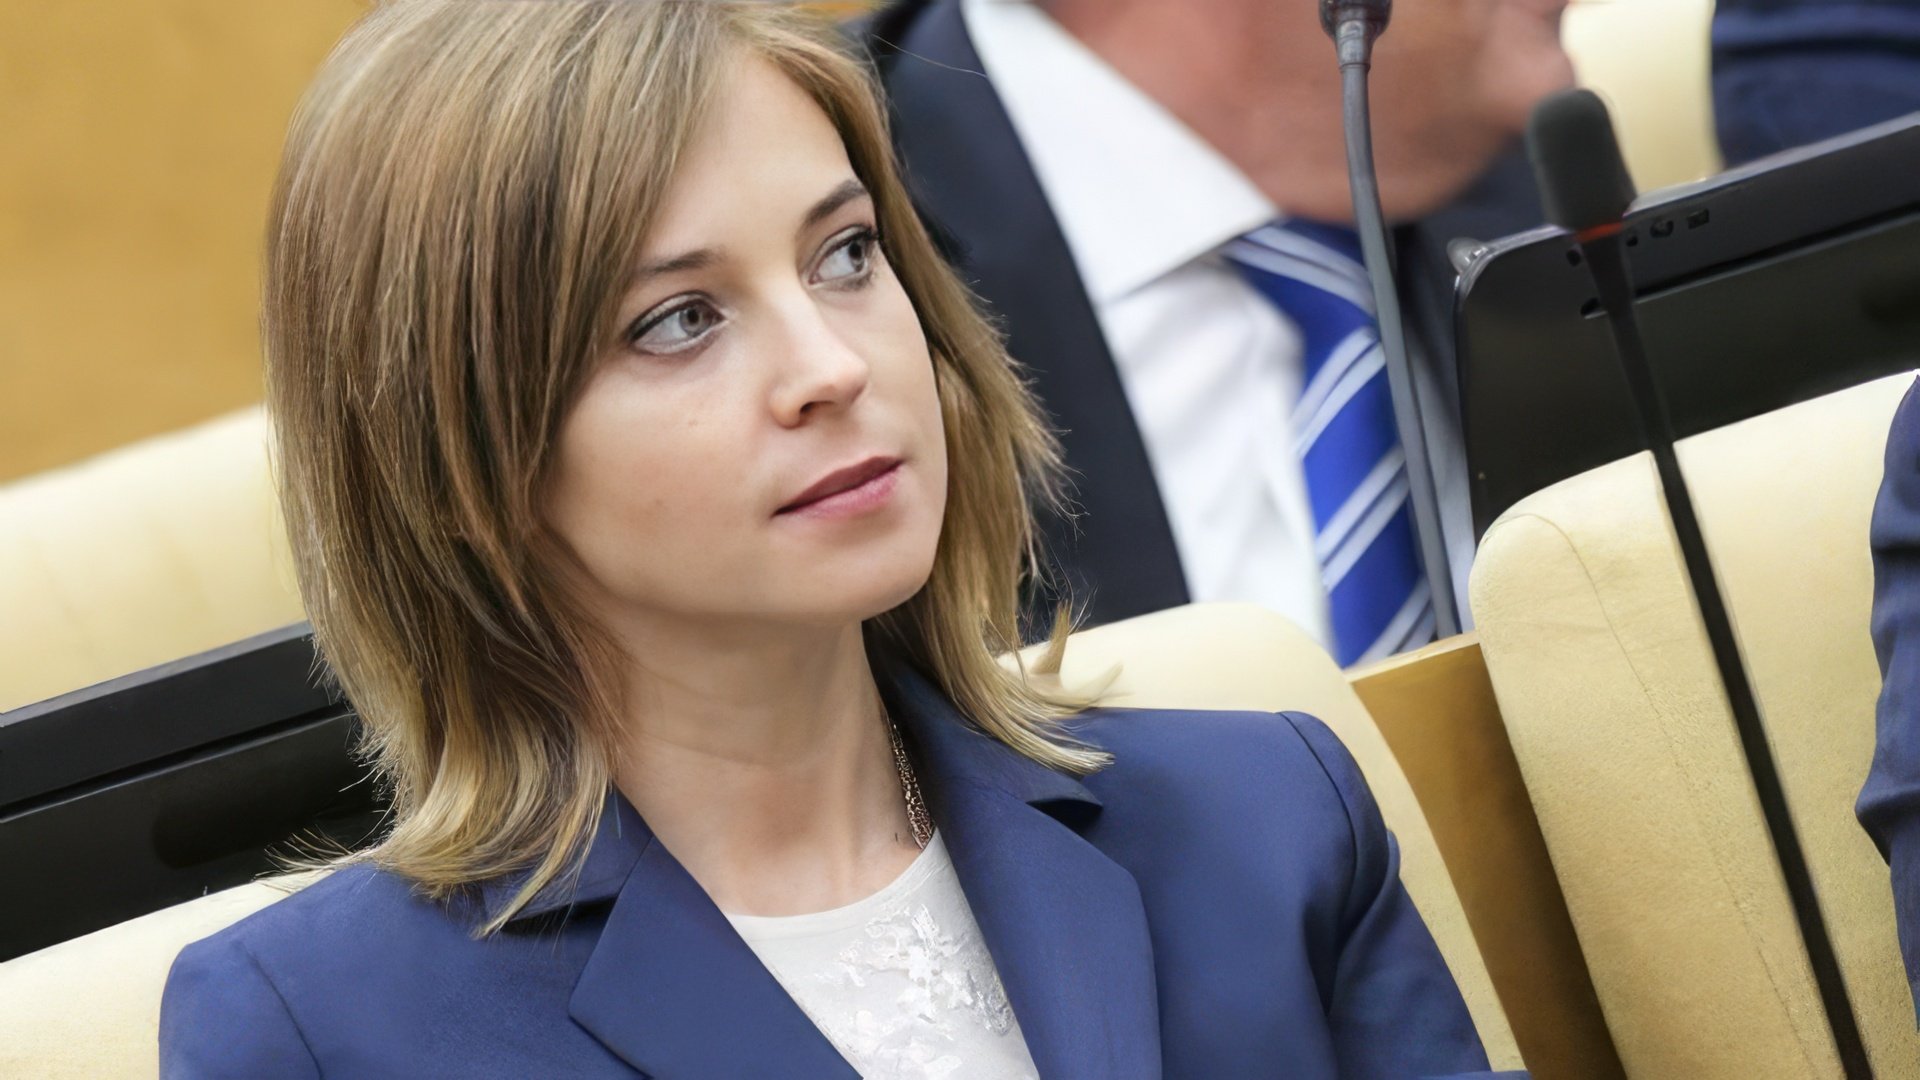 In 2016, Natalia Poklonskaya became a deputy of the State Duma